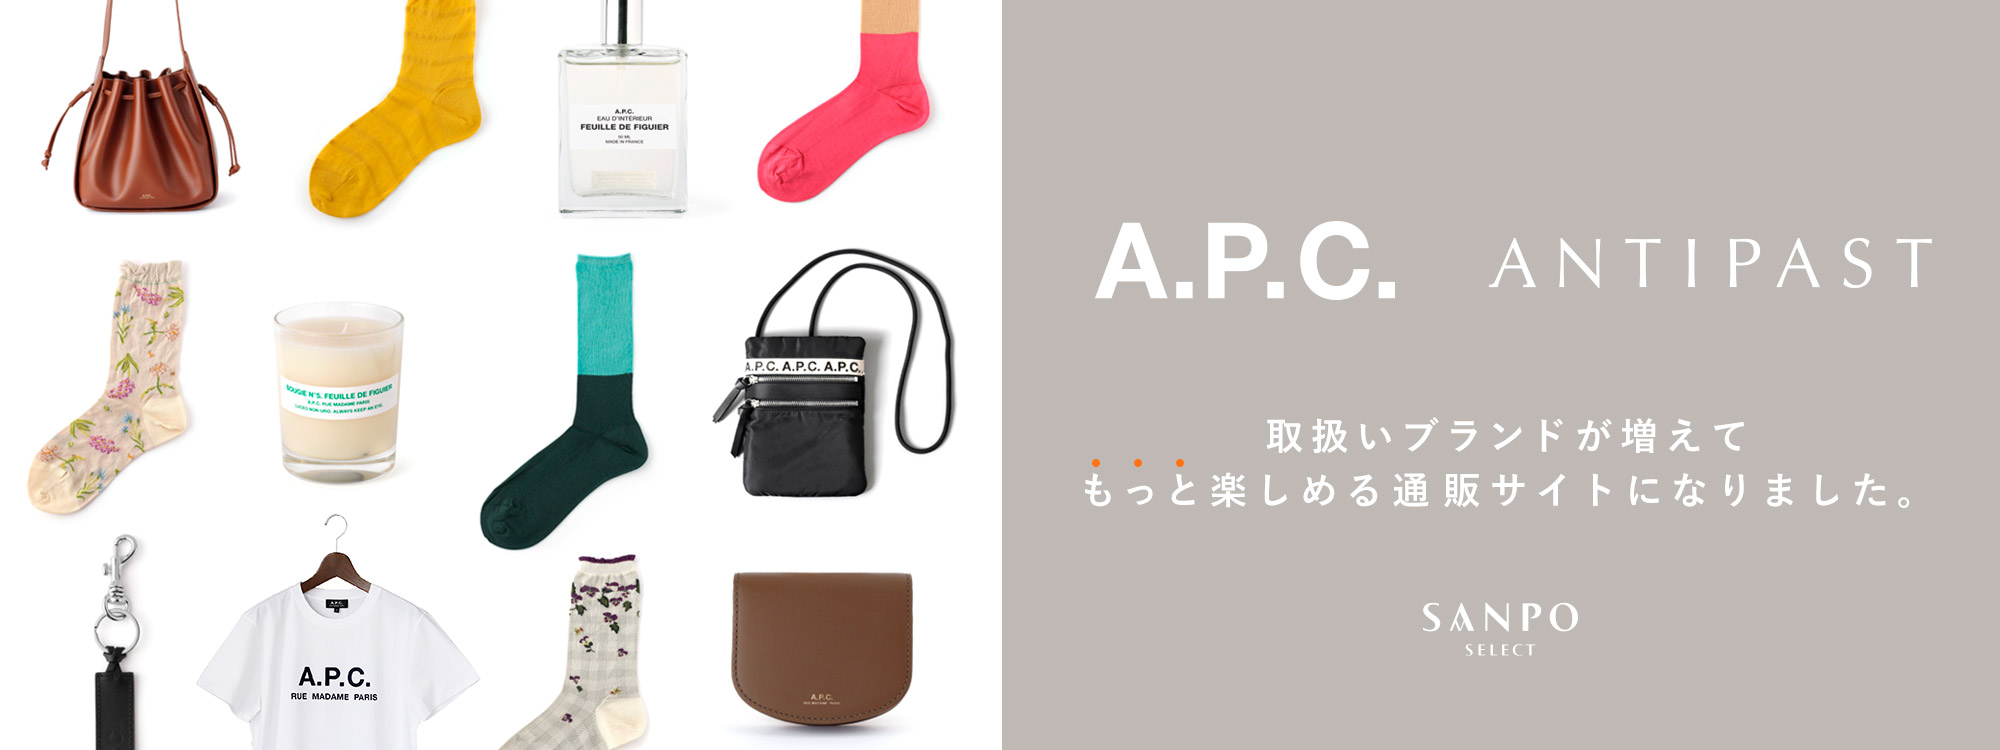 A.P.C. ANTIPAST 取扱いブランド増えました。